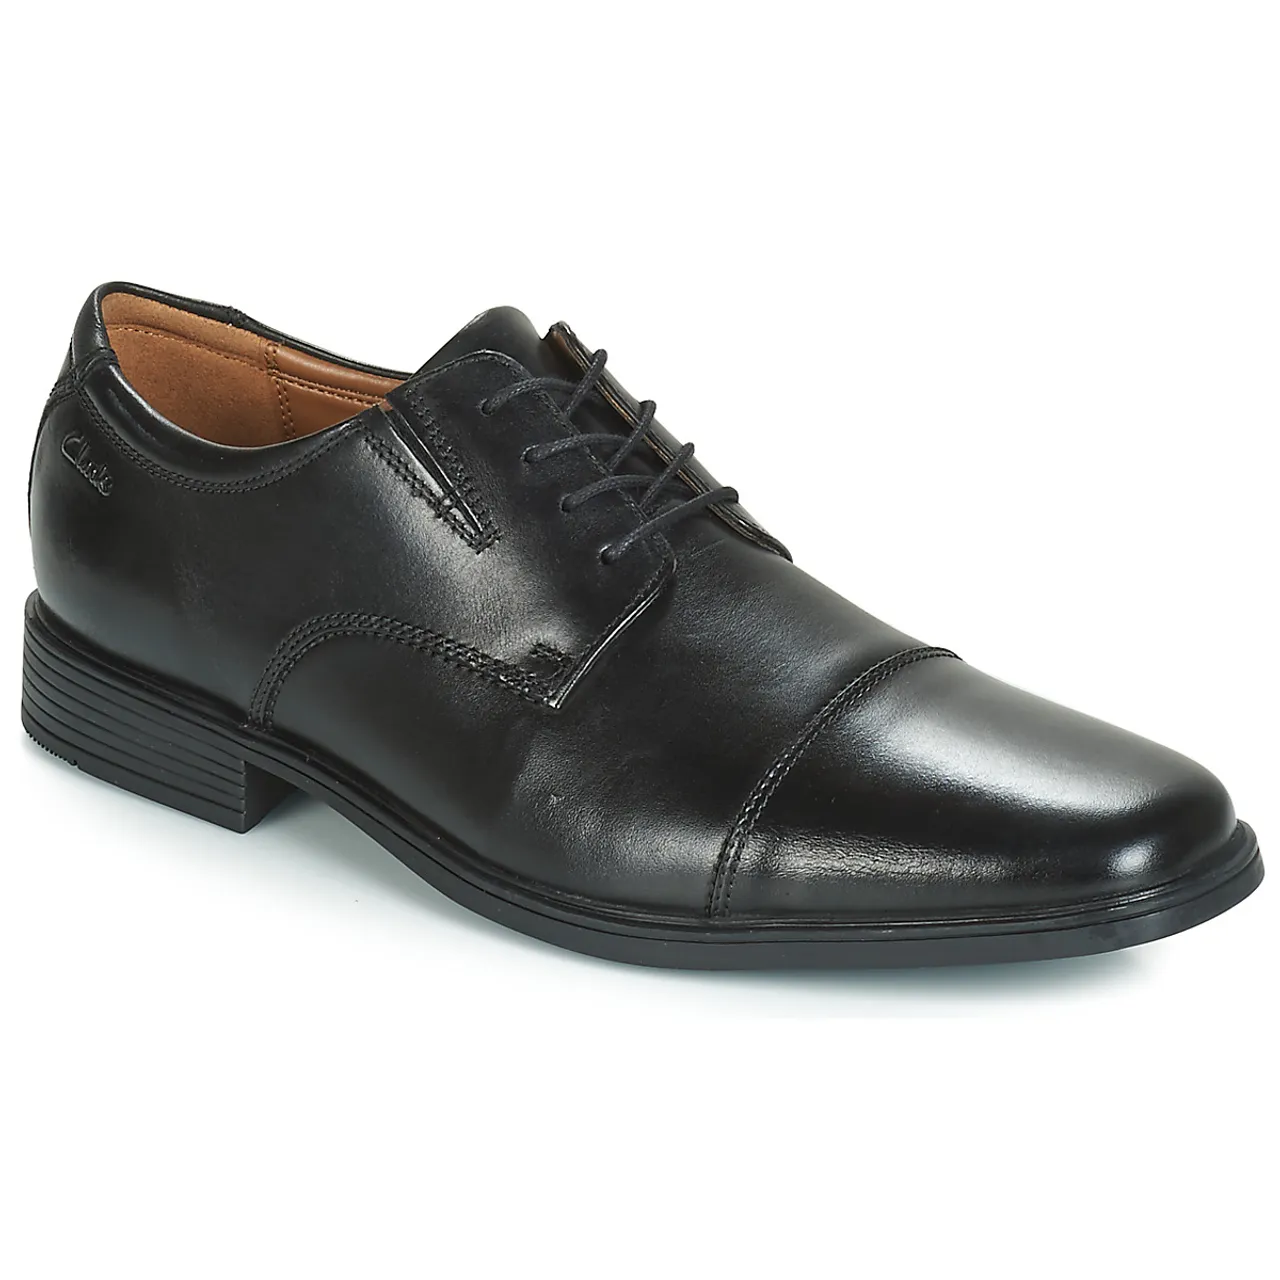 Clarks  TILDEN CAP  men's Casual Shoes in Black